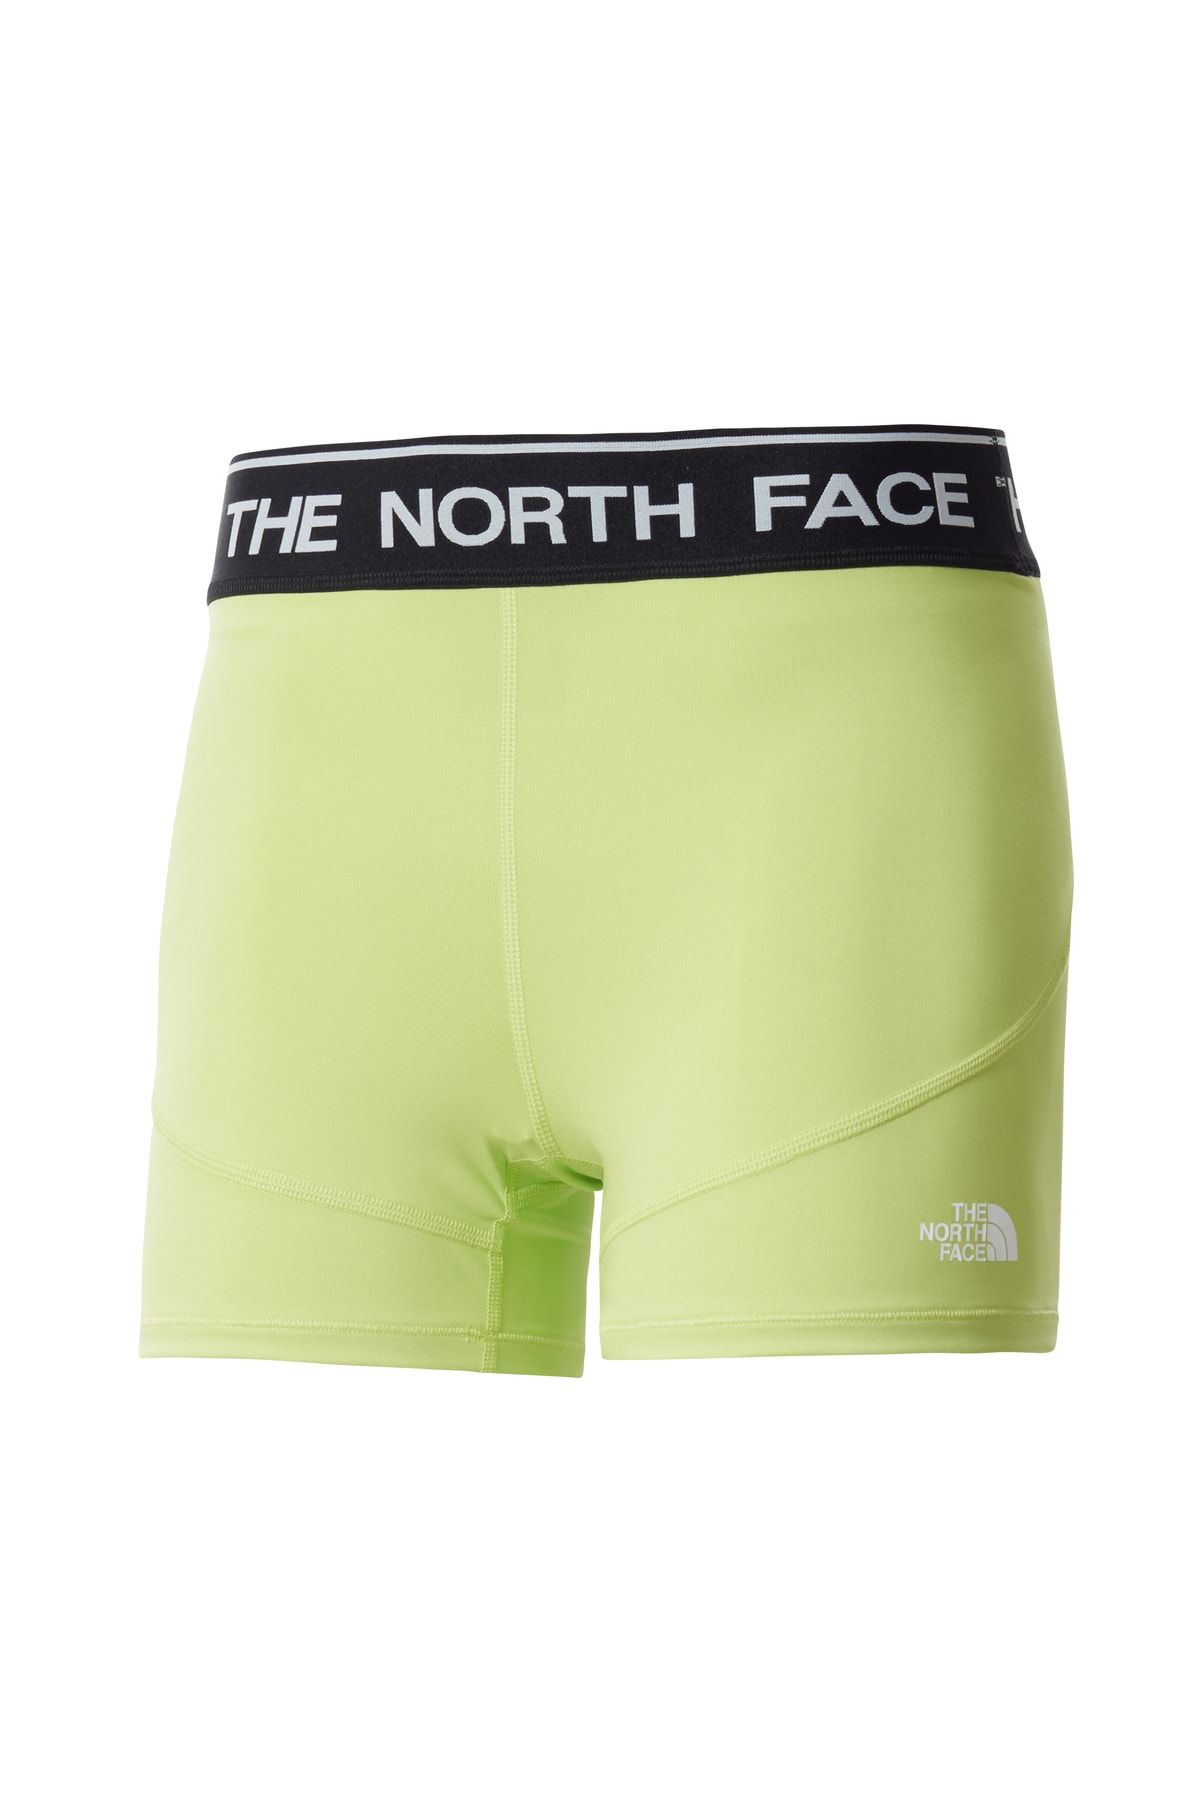 The North Face W Traınıng Short Kadın Yeşil Şort Nf0a5ıı2hdd1